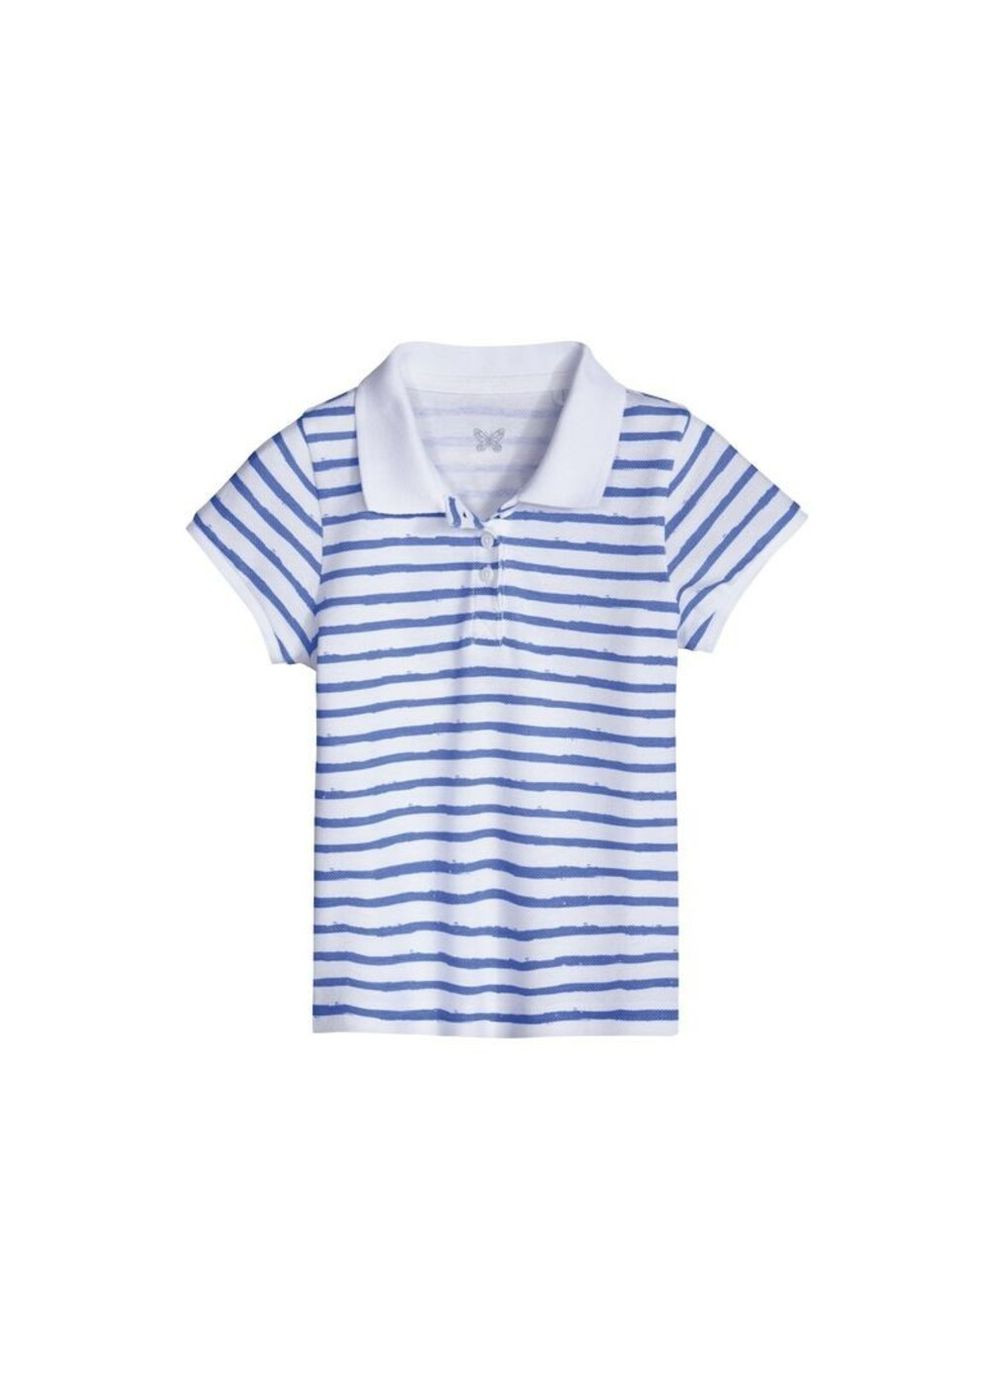 Синяя детская футболка-поло (набор 2шт) для девочки Lupilu в полоску